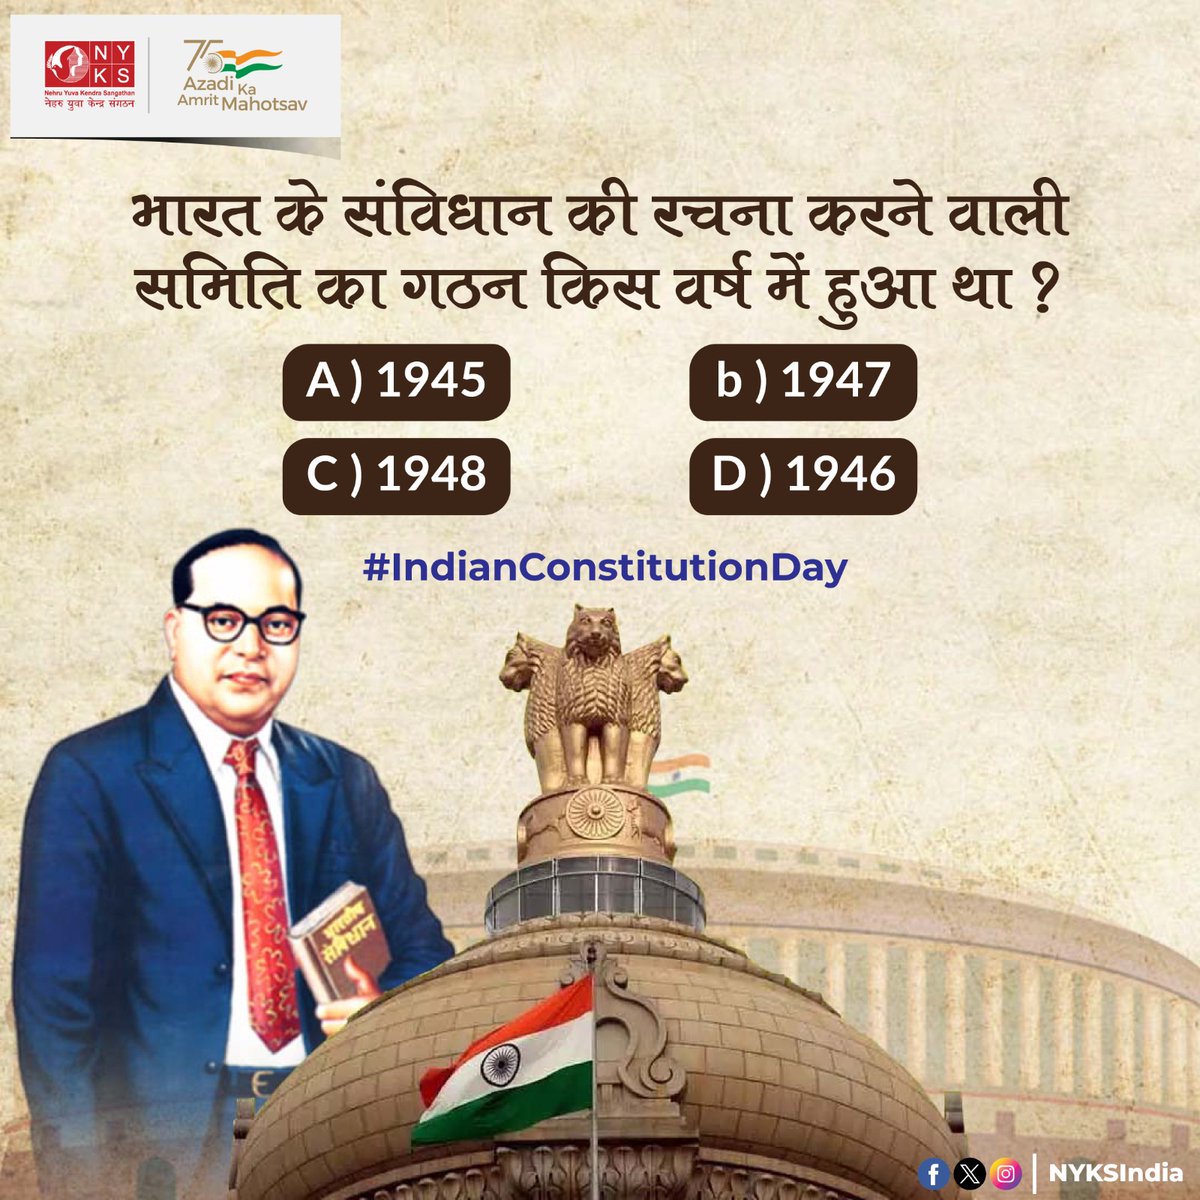 भारत के संविधान की रचना एक अत्यंत कुशल और सूझ-बूझ वाली समिति ने की थी। बताइए किस वर्ष में ये समिति बनी थी? 

#KnowYourConstitution #IndianConstitutionDay📜  #NYKS #Bharat